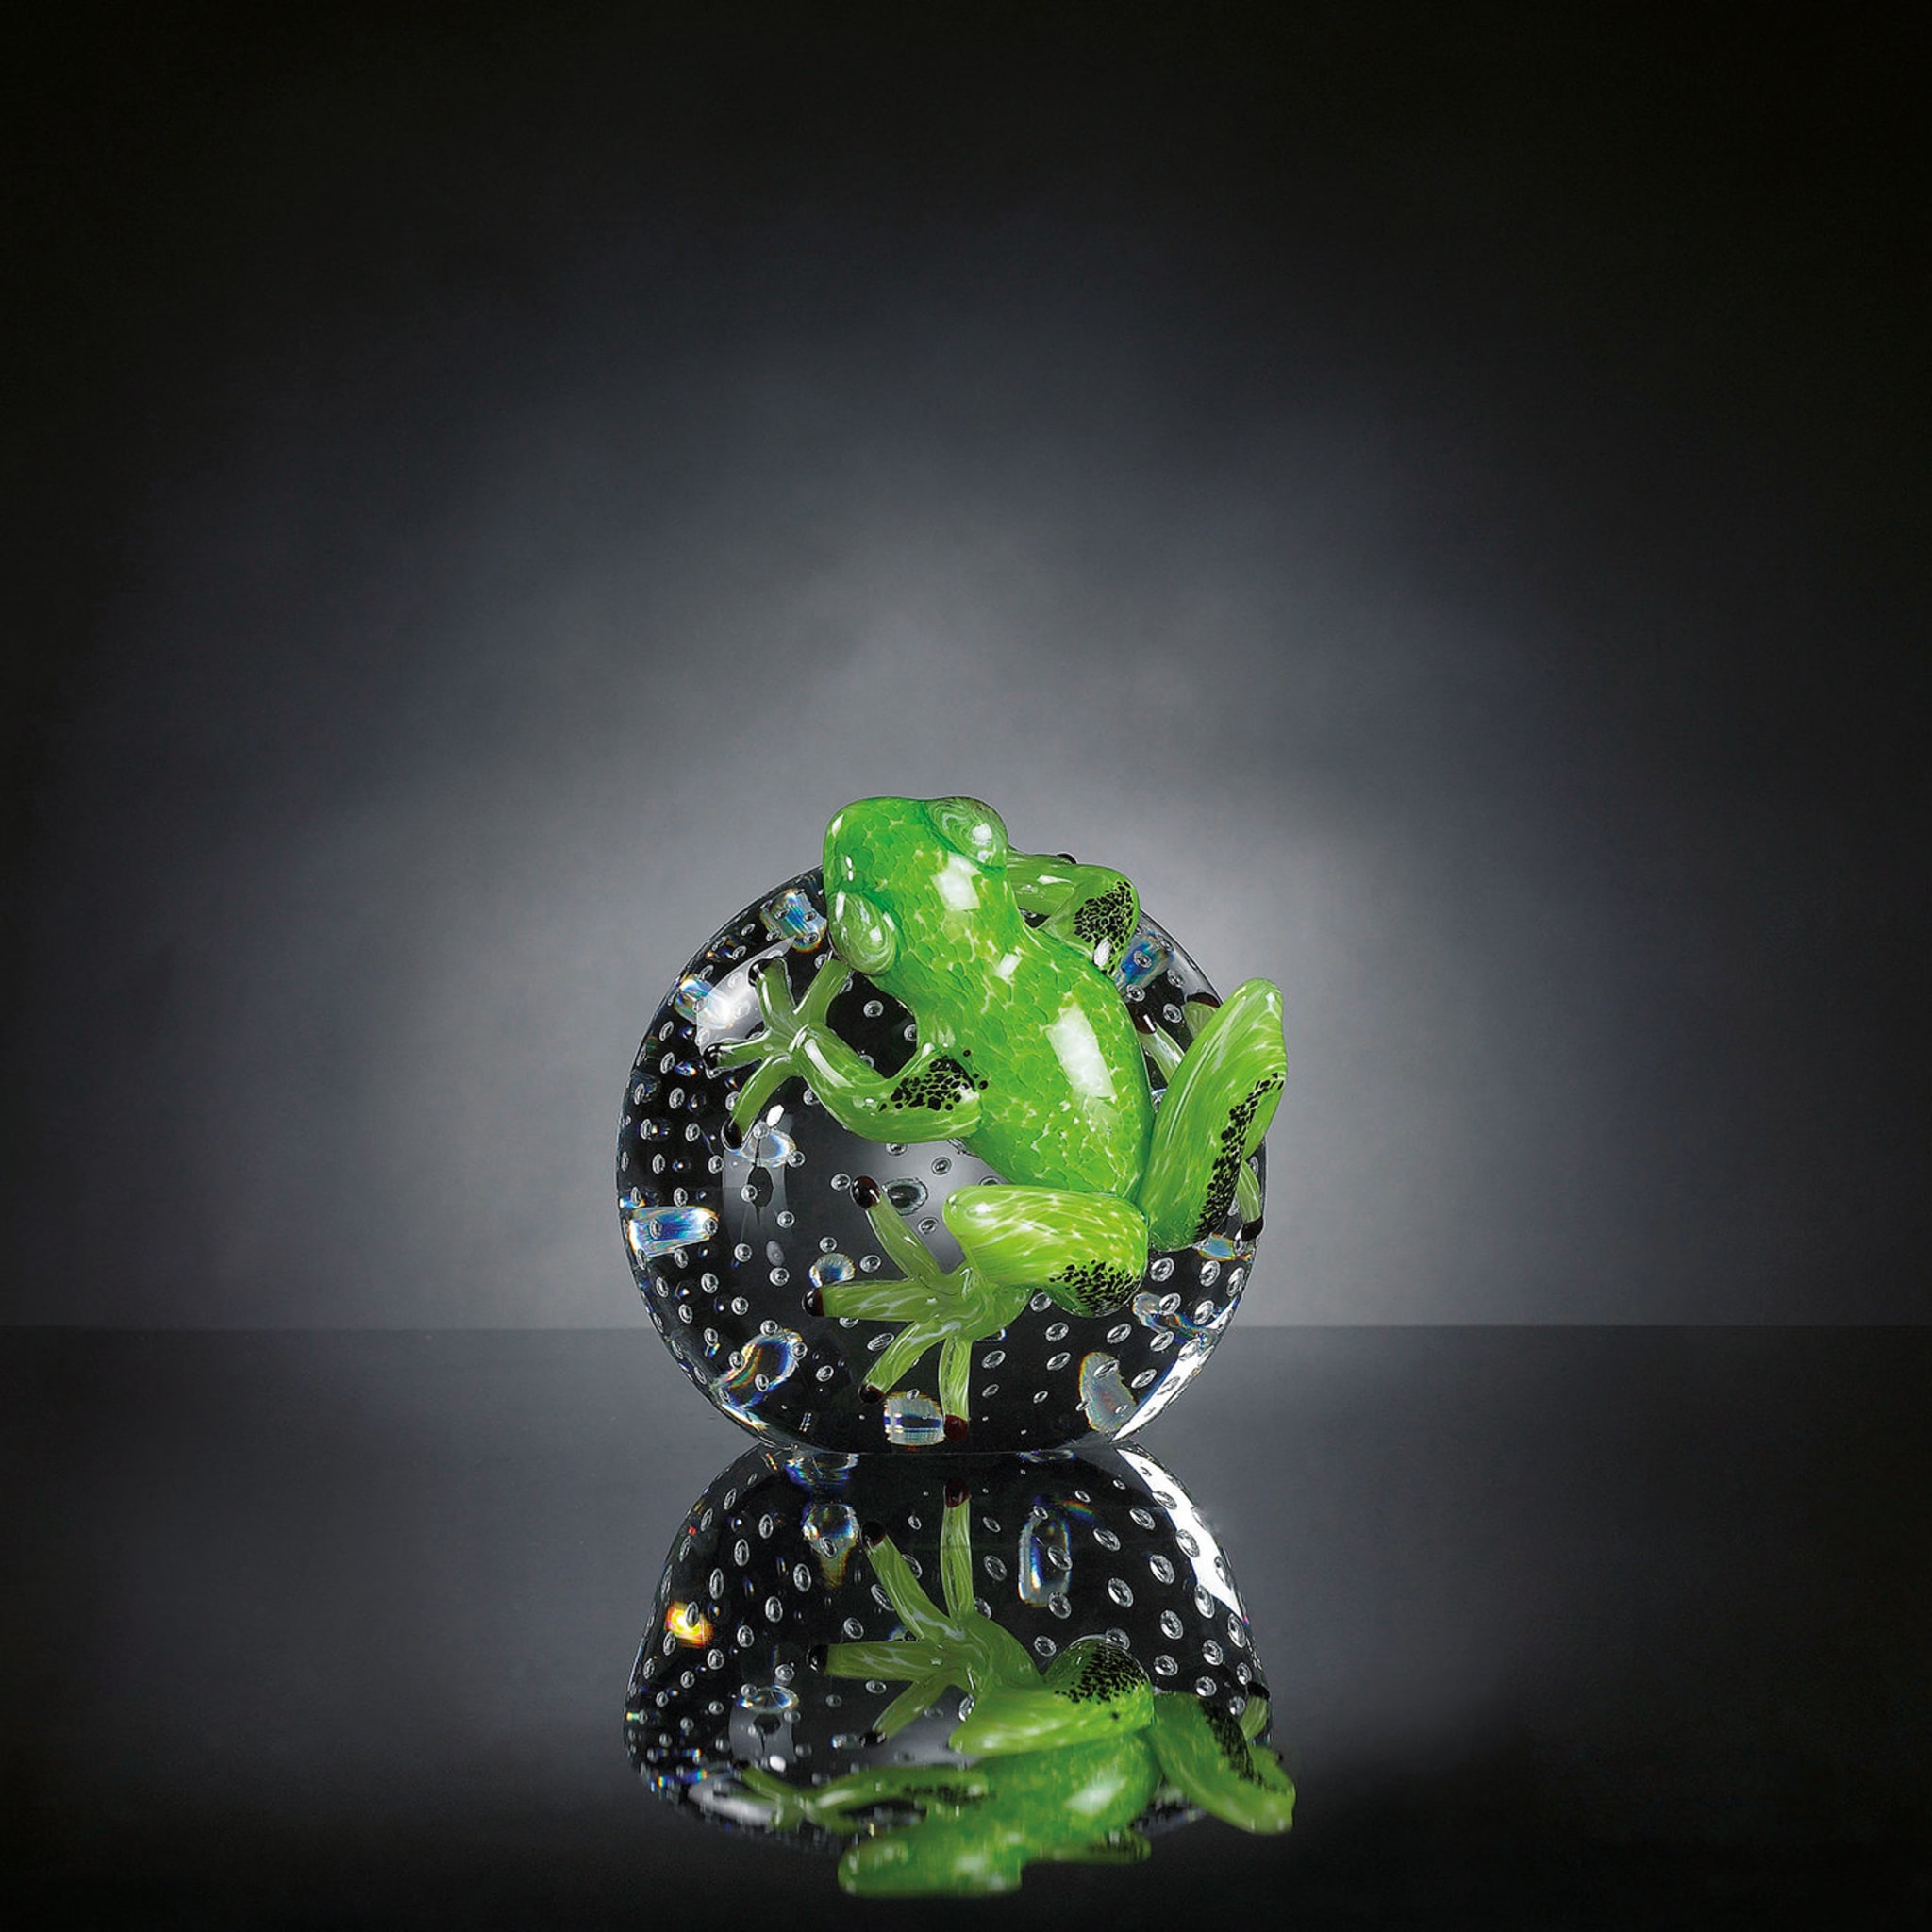 Rana di vetro verde su sfera  - Vista alternativa 1